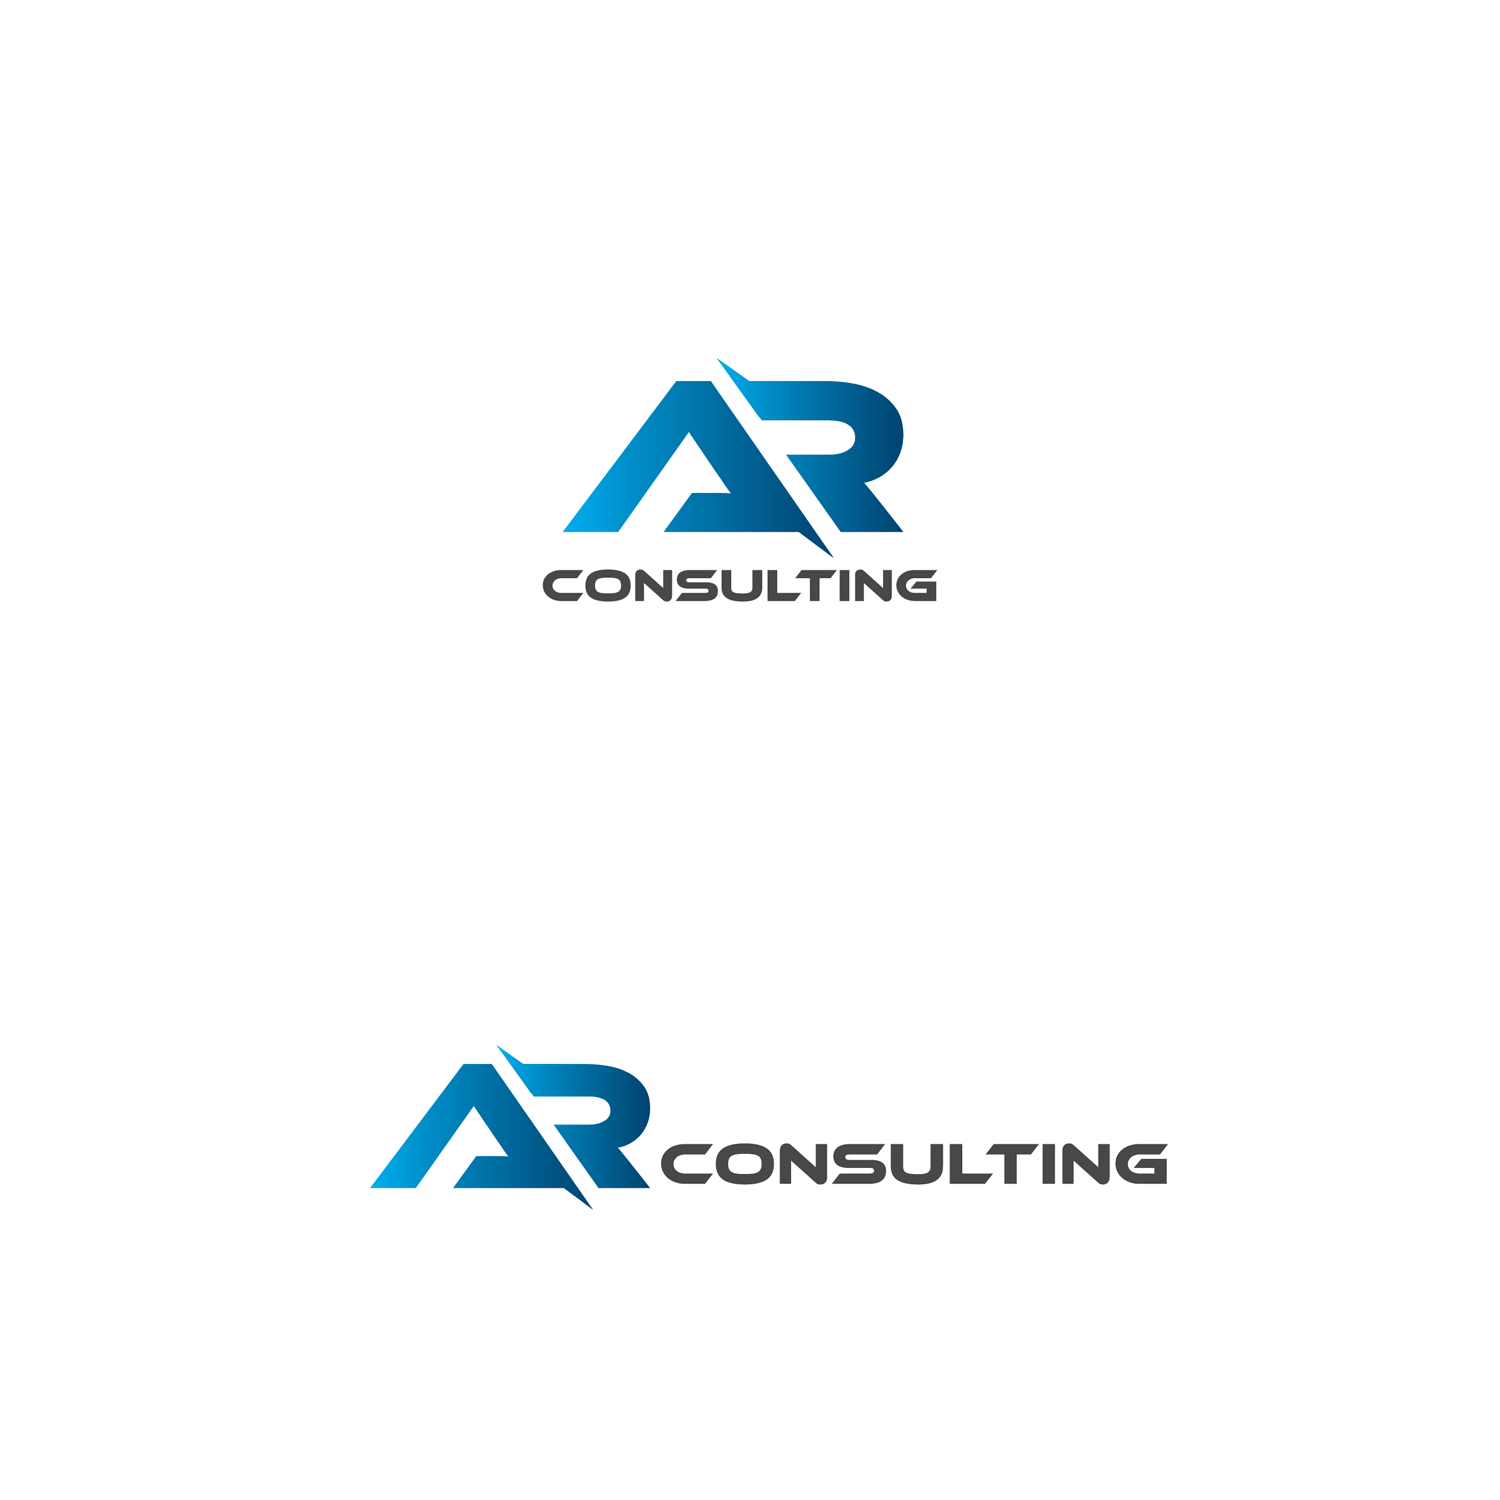 Consultant Logo - Professional, Upmarket, Business Consultant Logo Design for AR